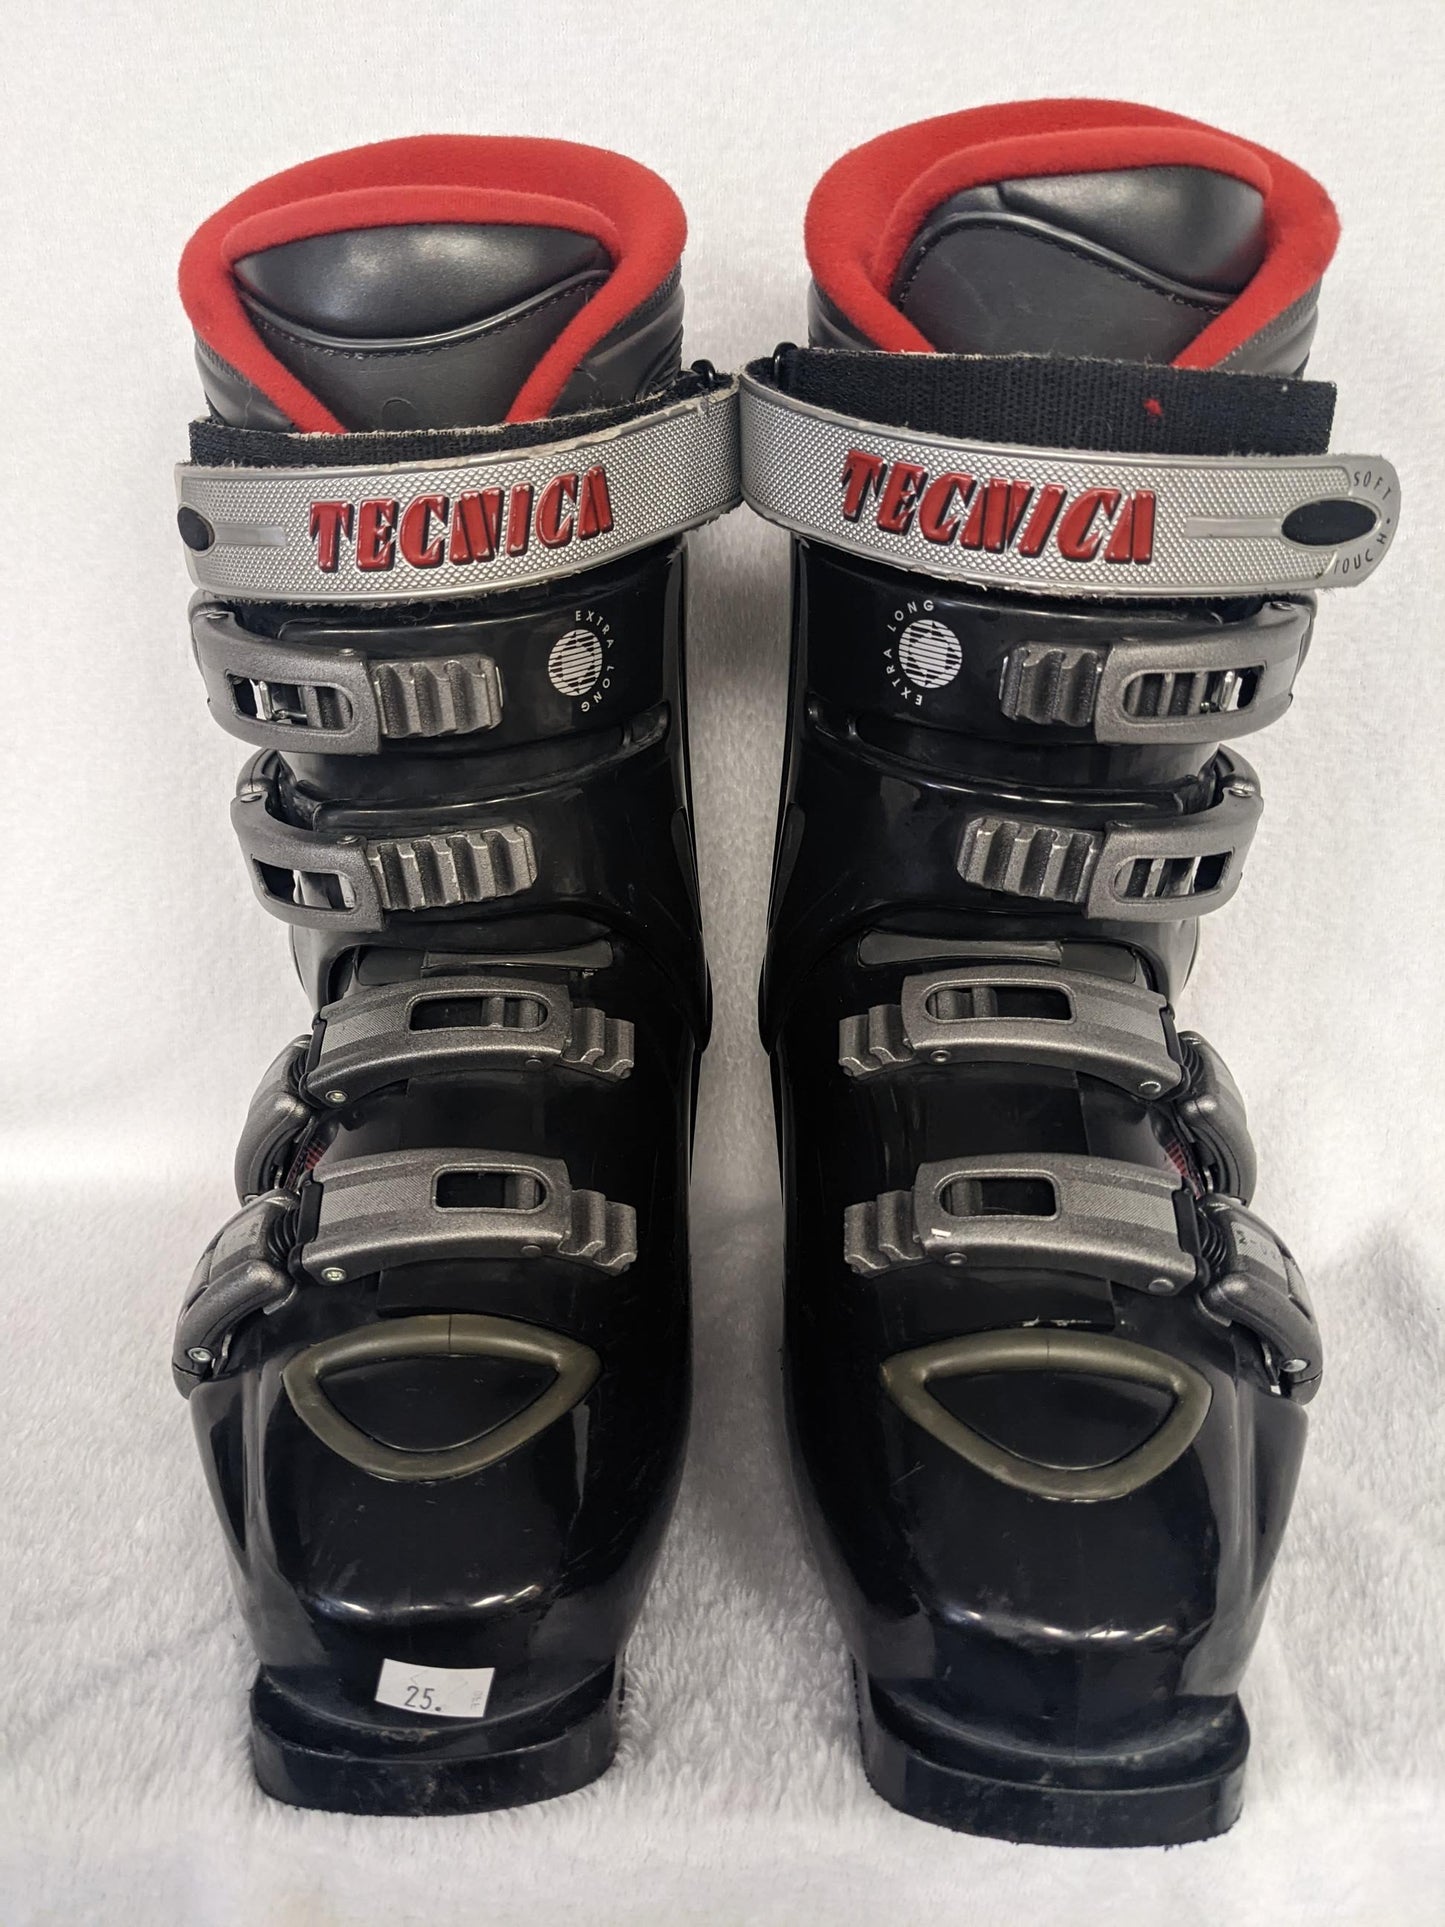 Tecnica Innotec TI-8 Ski Boots Size 25 Color Black Condition Used